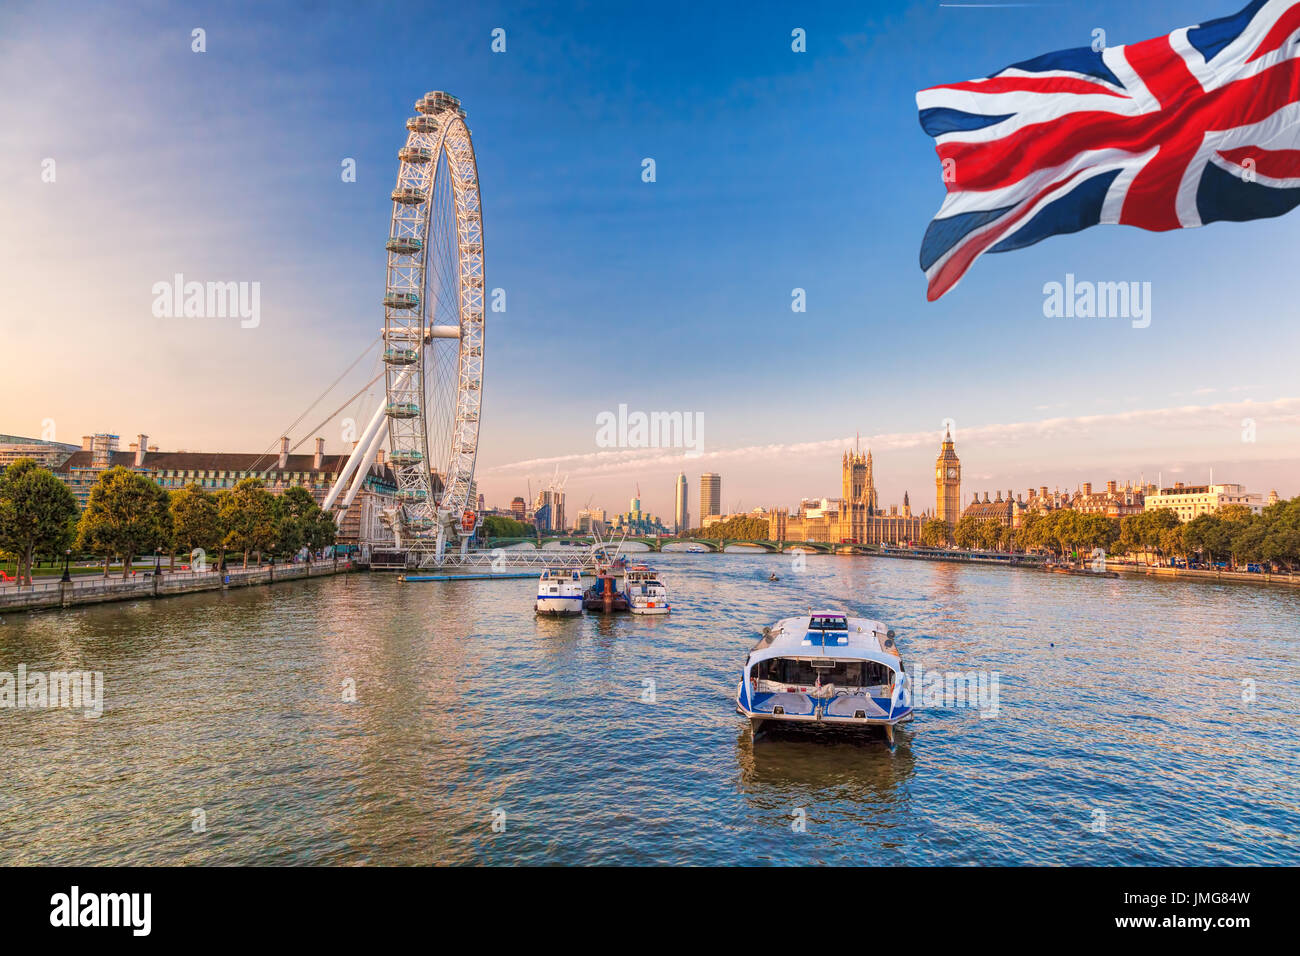 Lever du Soleil avec Big Ben, le Palais de Westminster, London Eye, Westminster Bridge, Tamise, Londres, Angleterre, Royaume-Uni. Banque D'Images